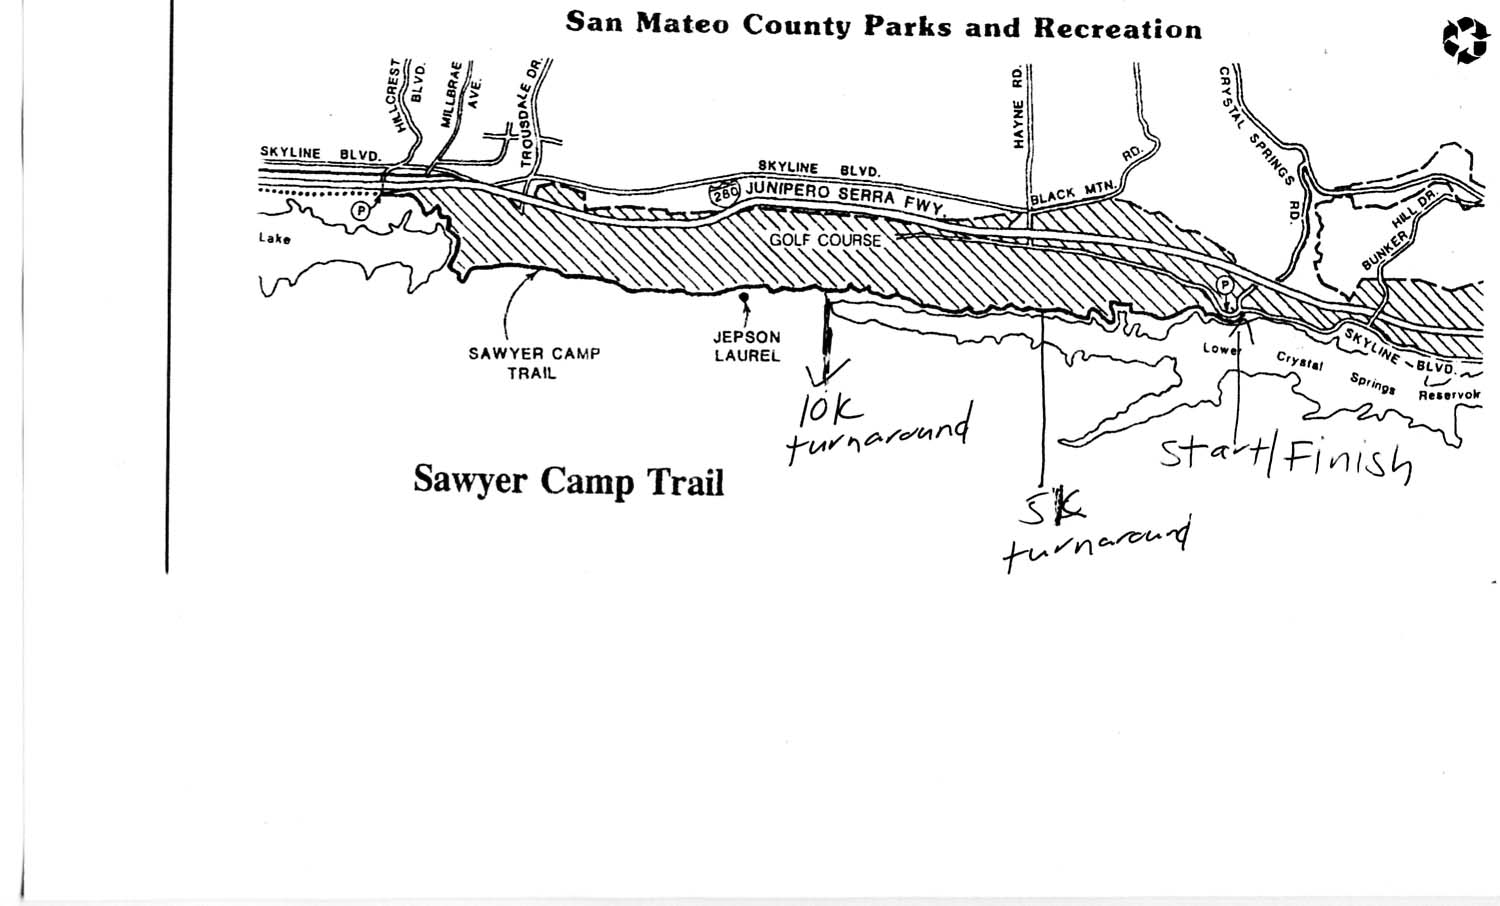 Sawyer Camp Trail